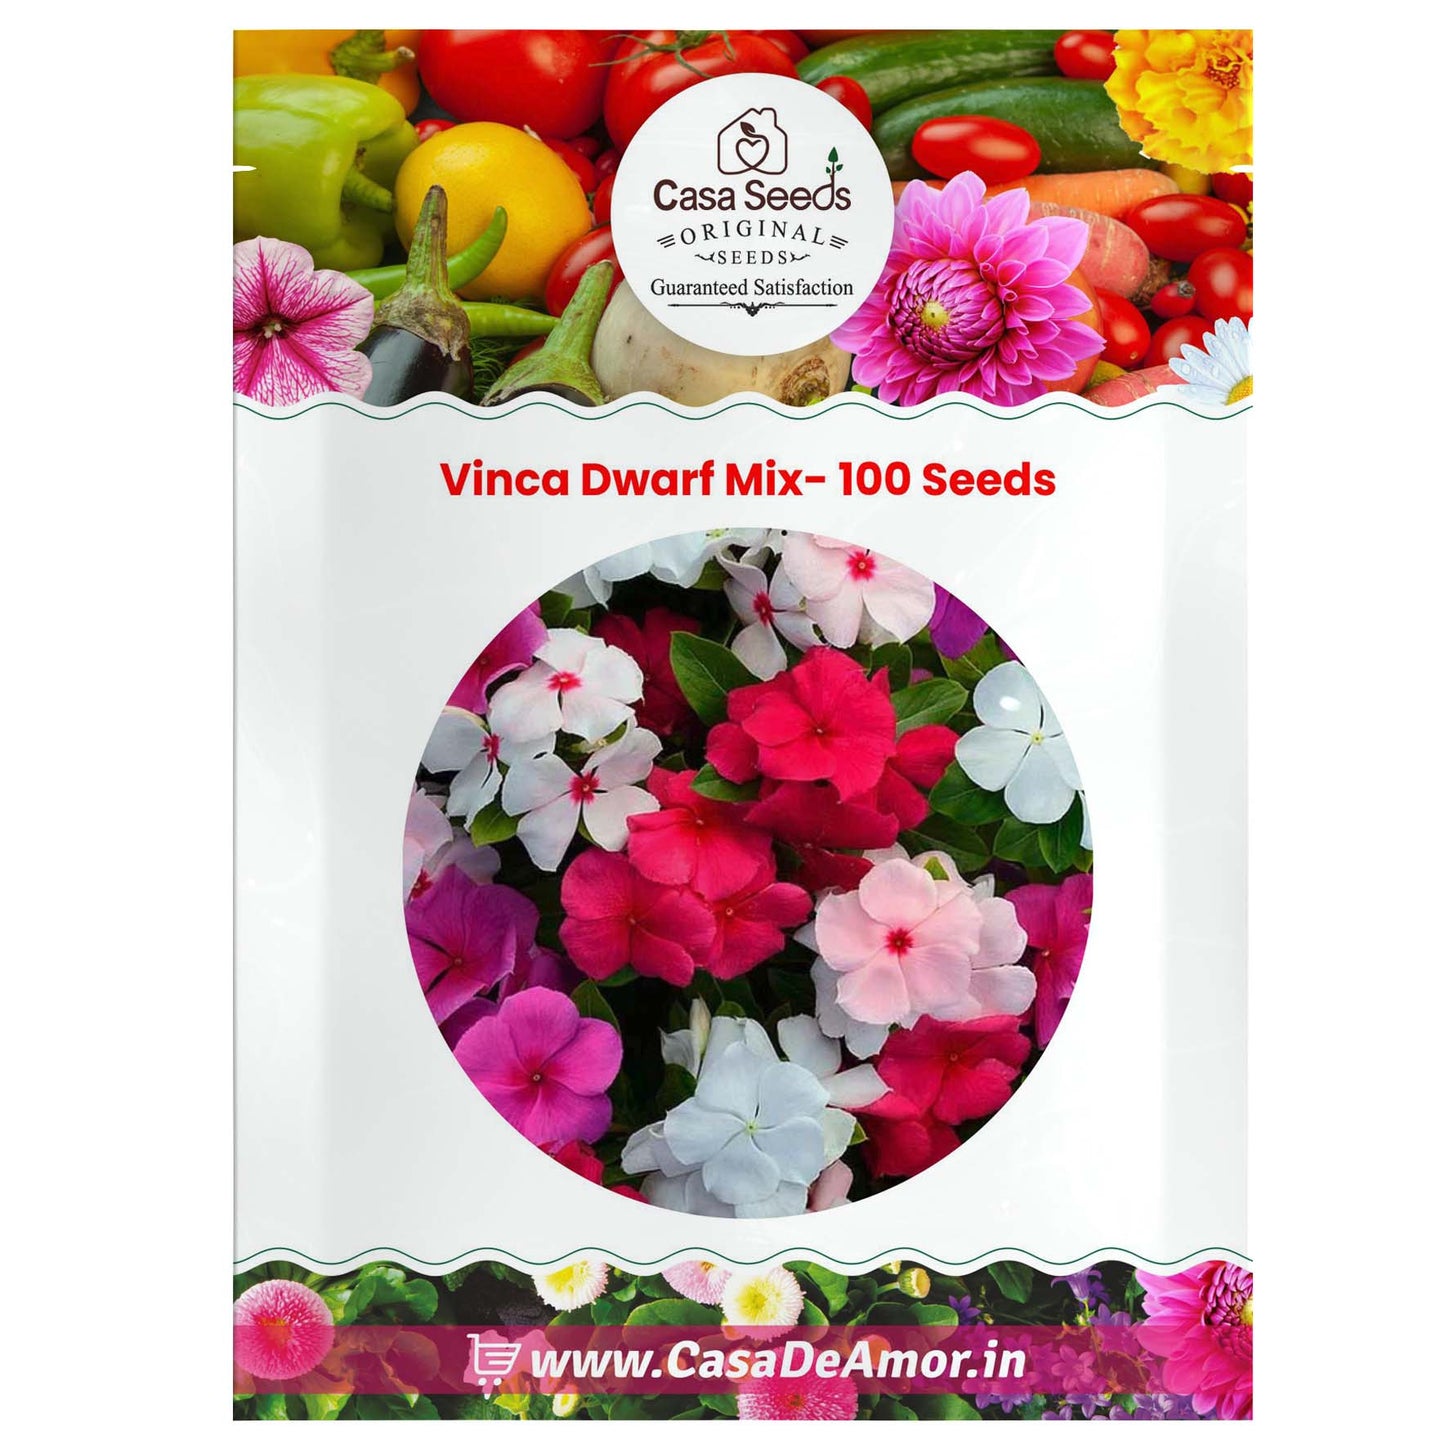 Vinca Dwarf Mix- 100 Seeds